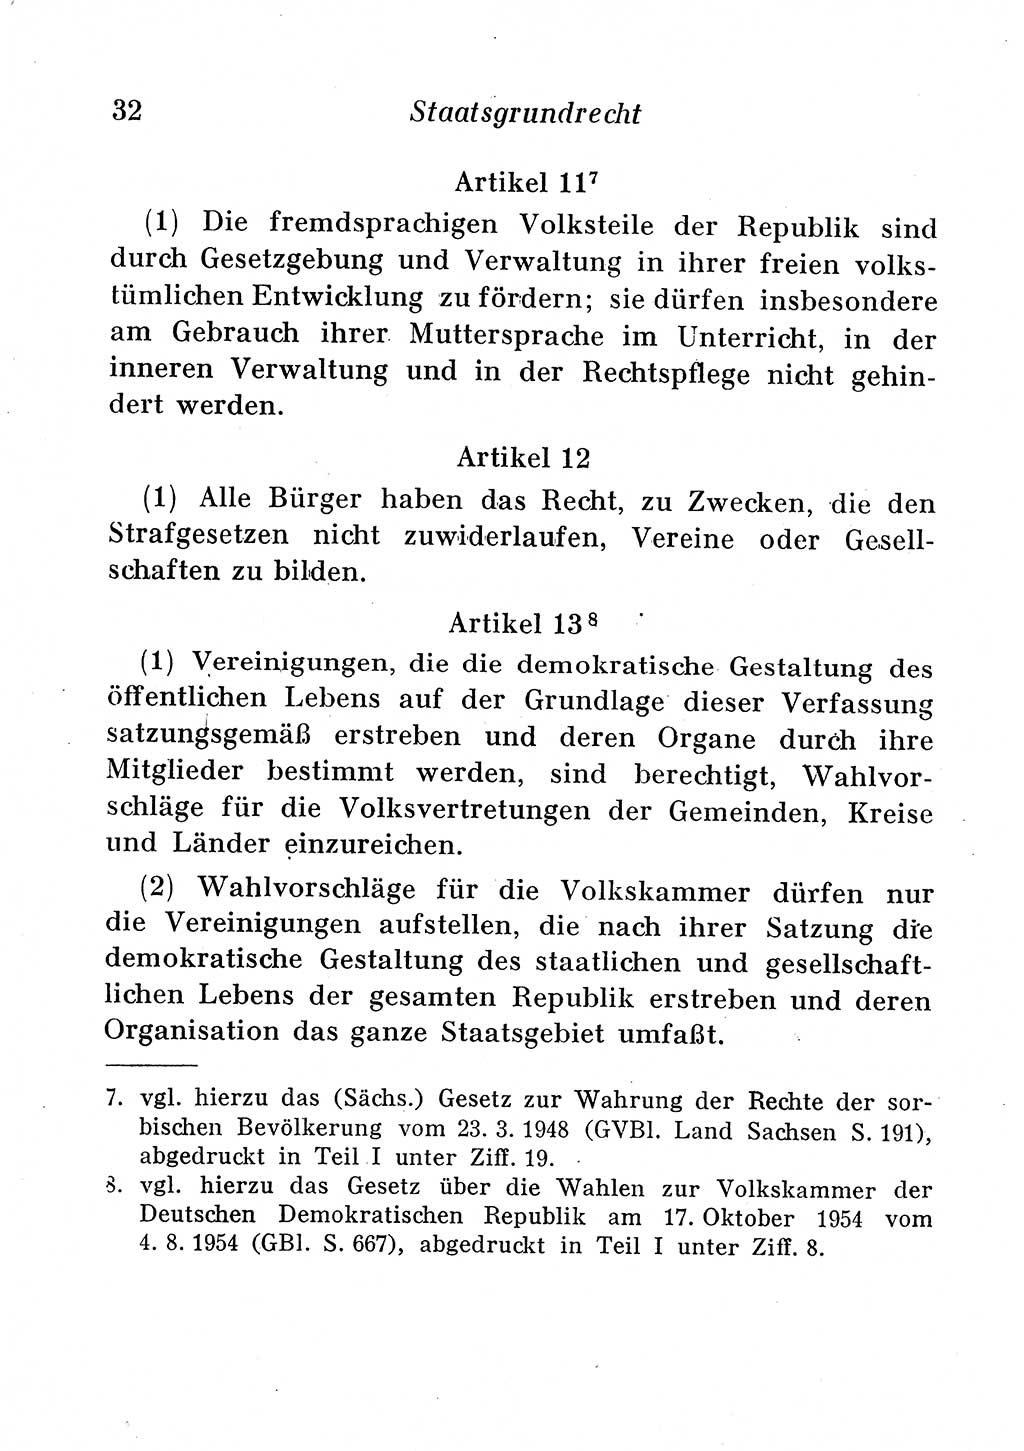 Staats- und verwaltungsrechtliche Gesetze der Deutschen Demokratischen Republik (DDR) 1958, Seite 32 (StVerwR Ges. DDR 1958, S. 32)